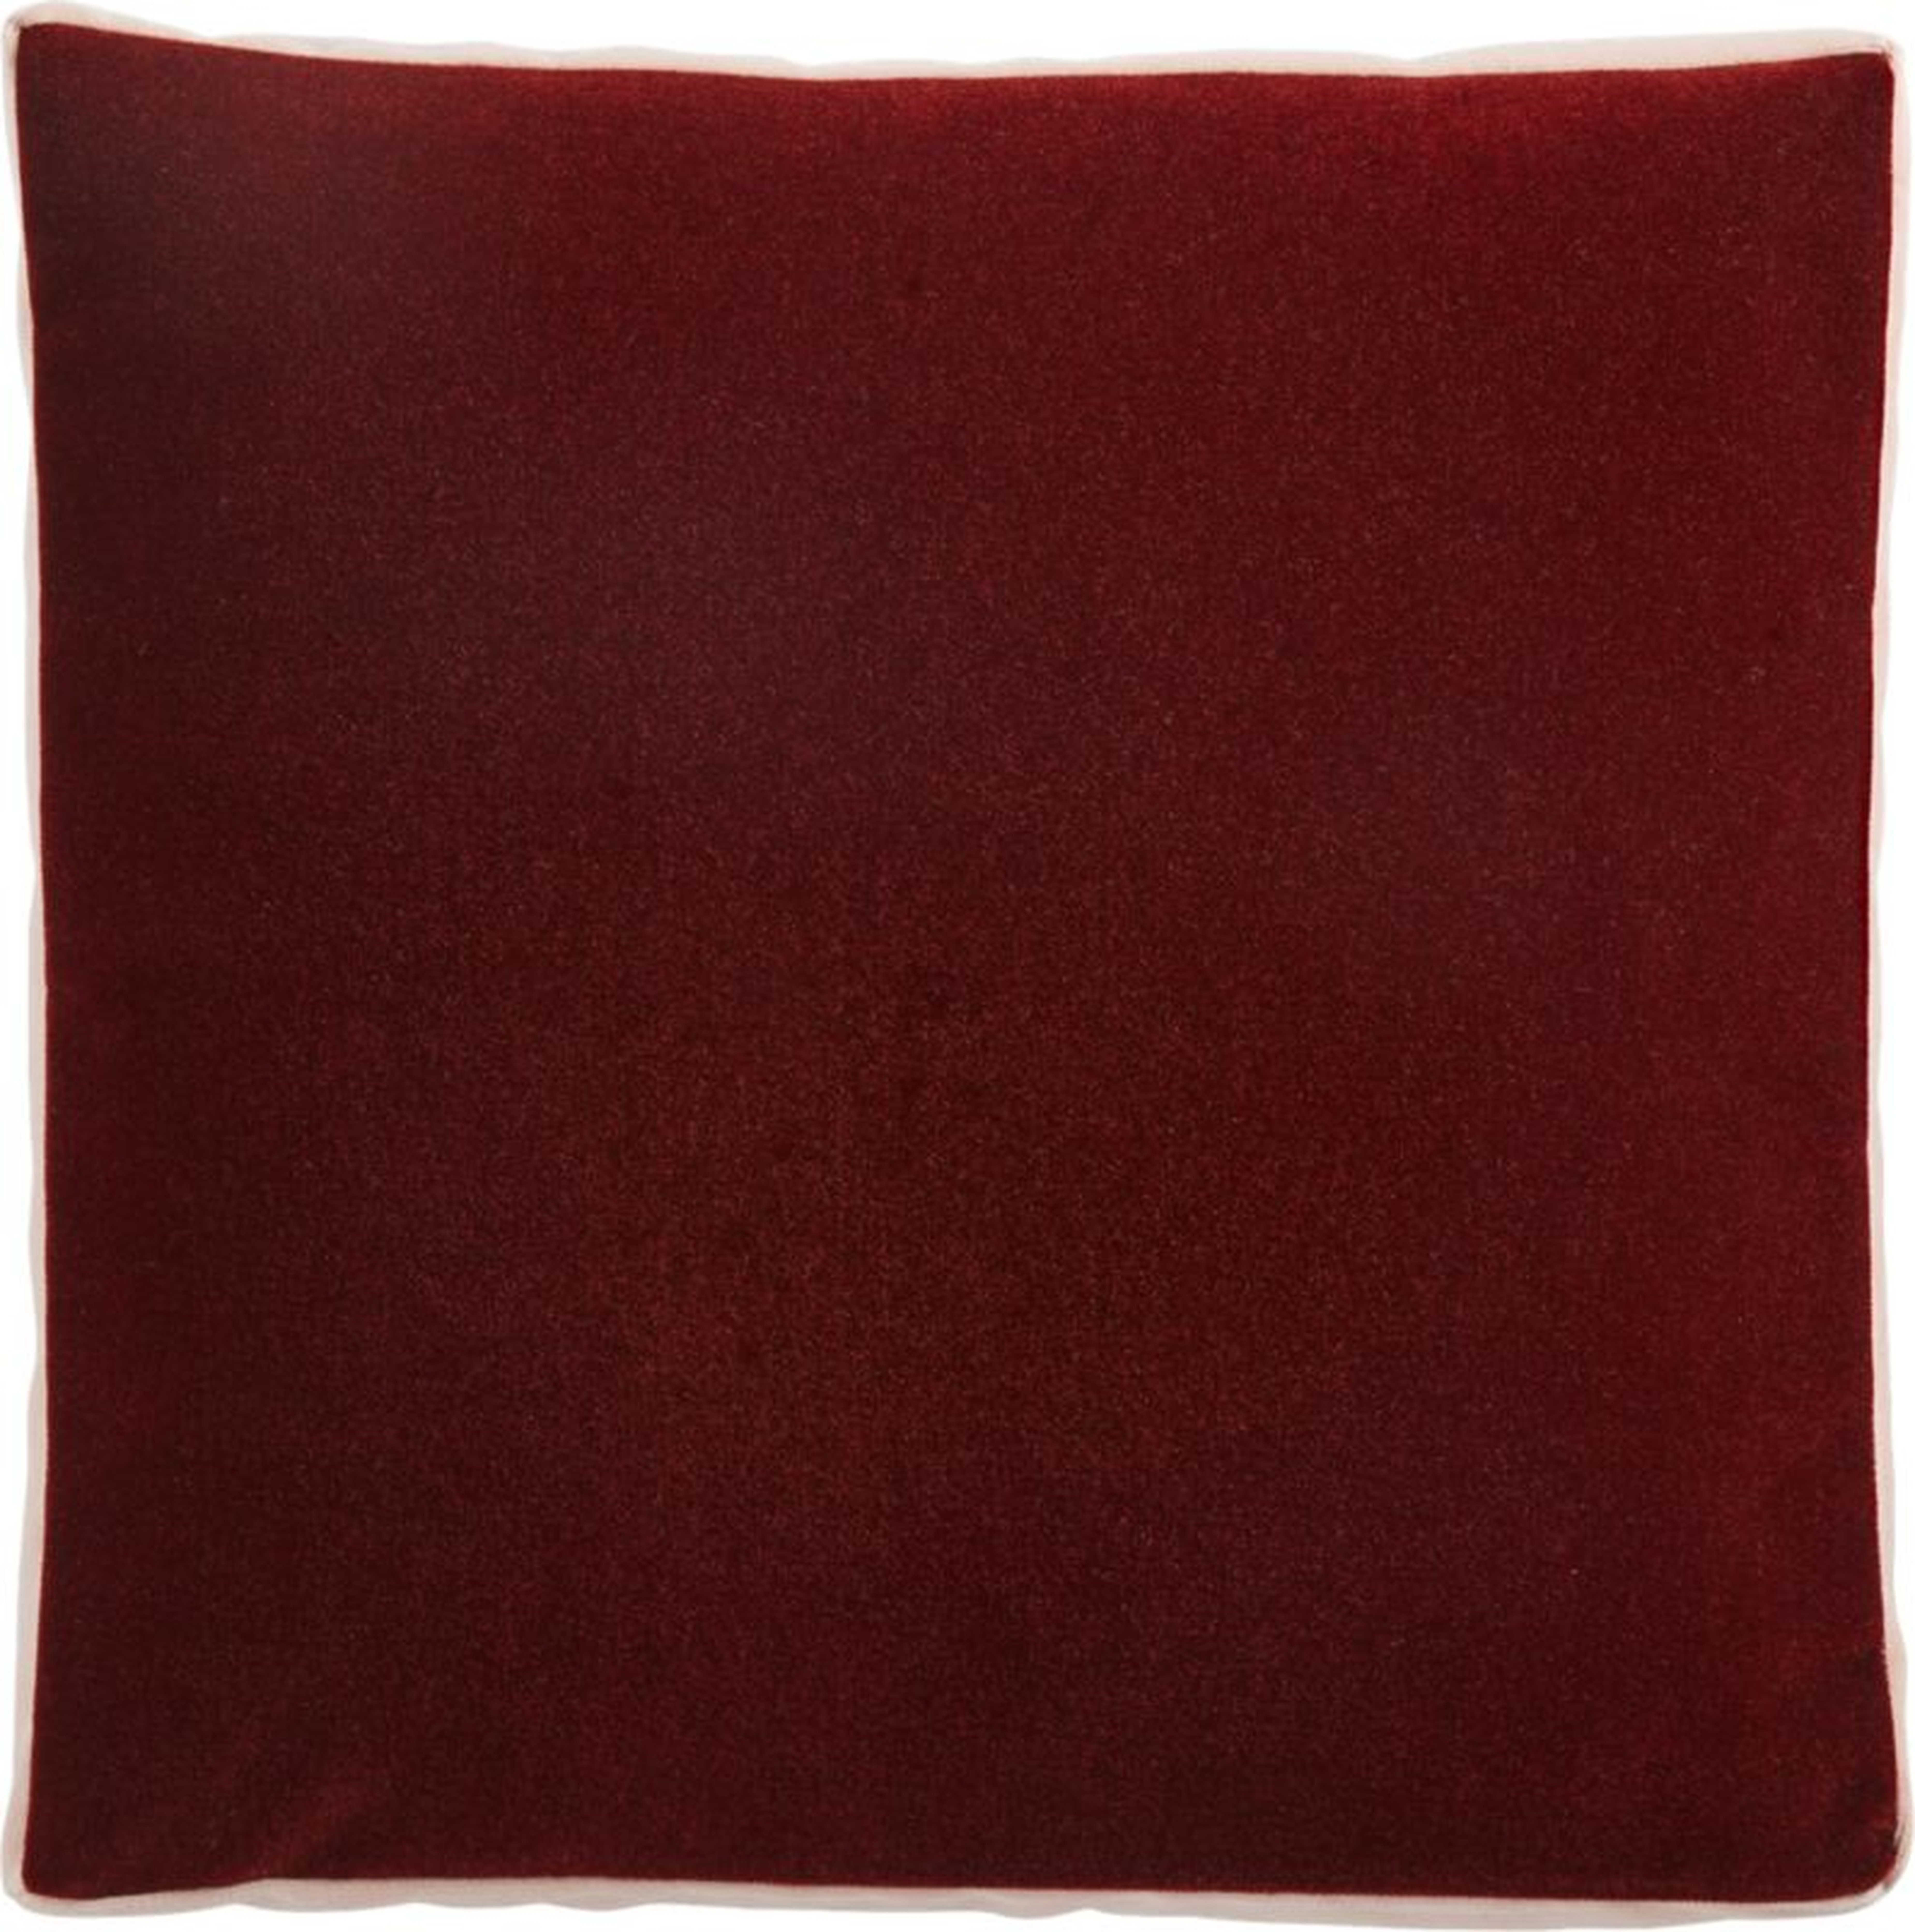 18" Bardo Rust Velvet Pillow with Down-Alternative Pillow Insert - CB2